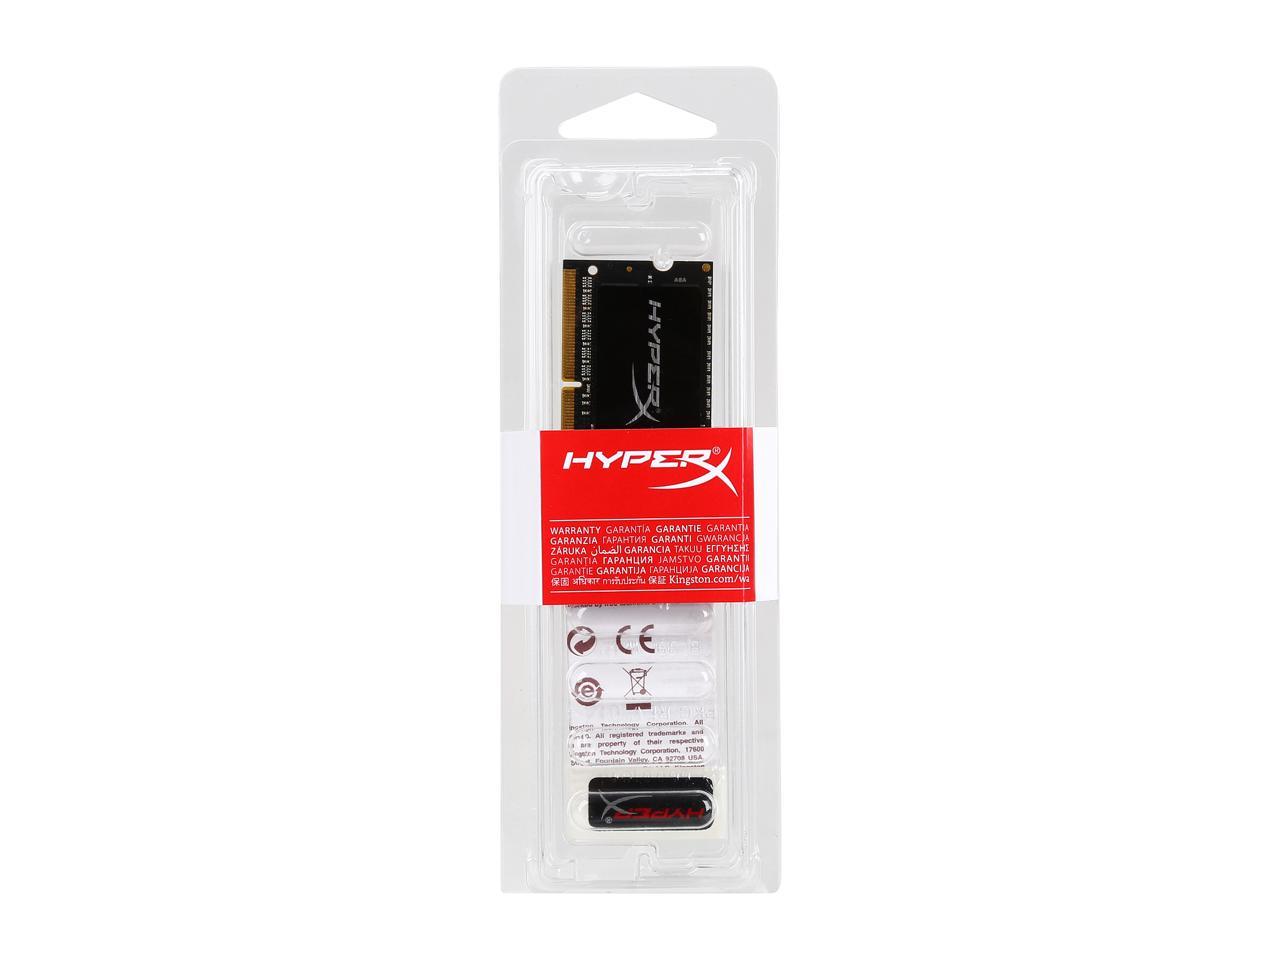 HyperX 8GB DDR3L 1866 (PC3L 14900) Laptop Memory Model HX318LS11IB/8